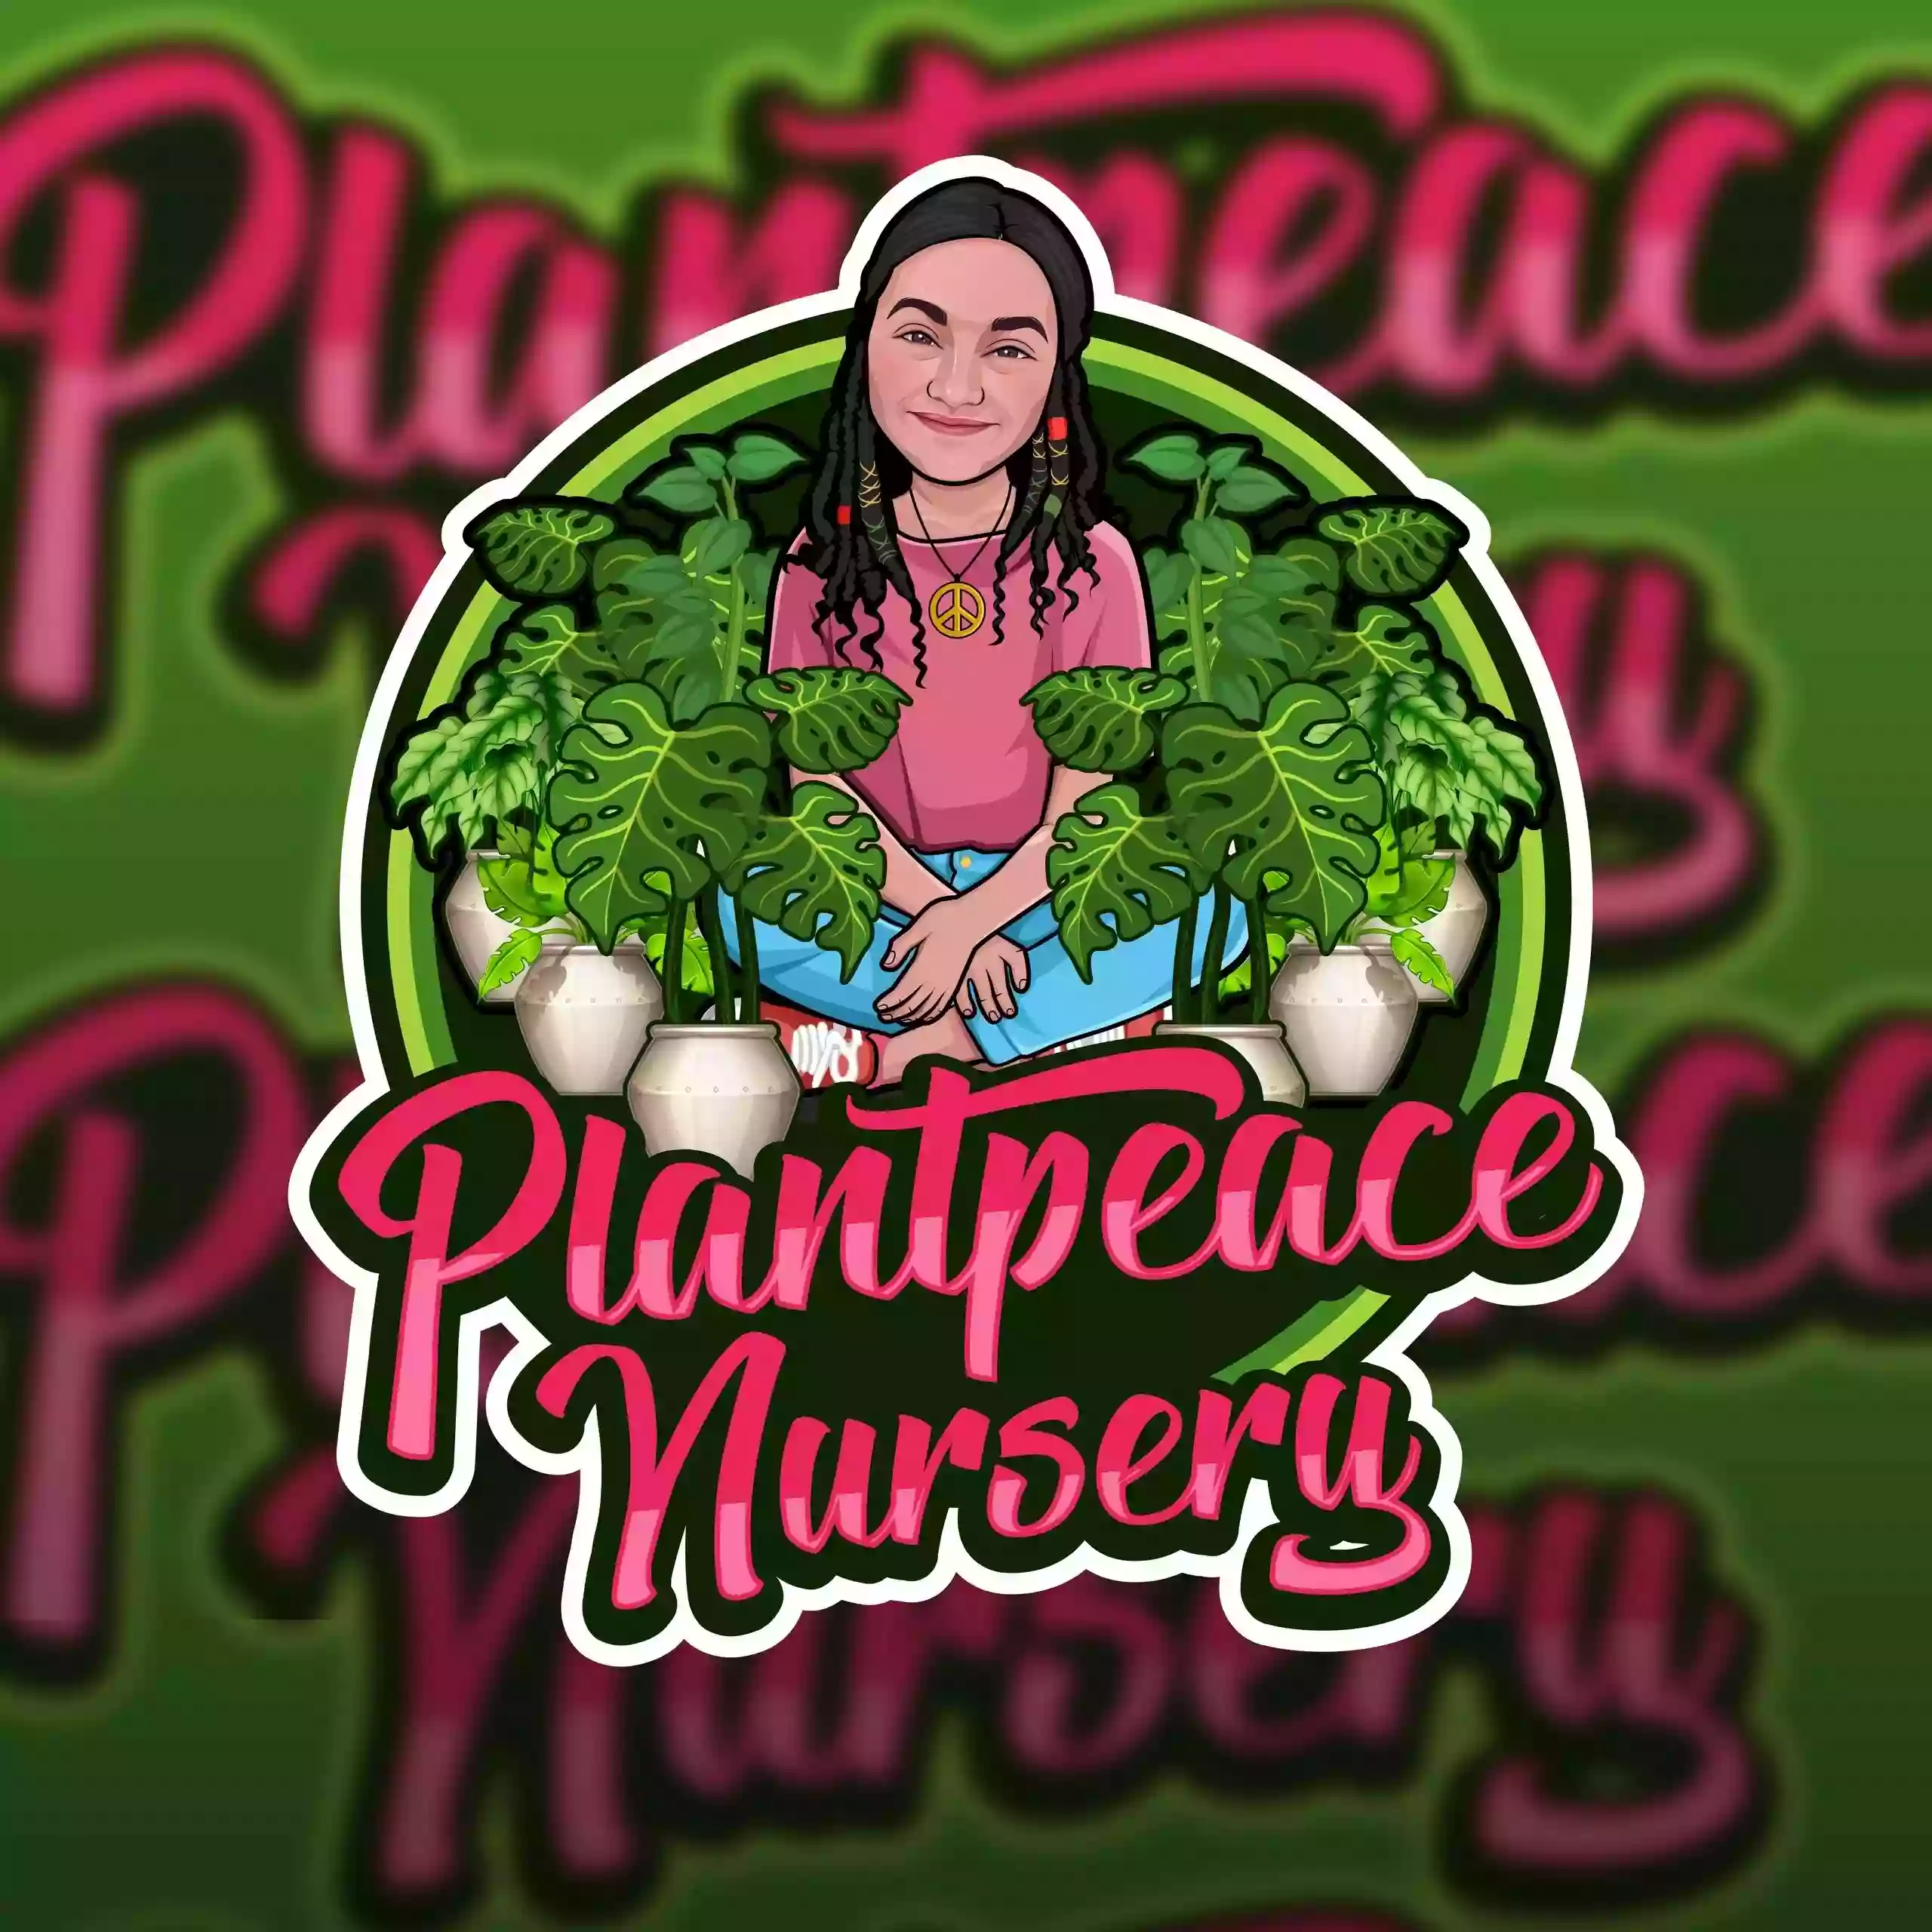 Plantpeace Nursery